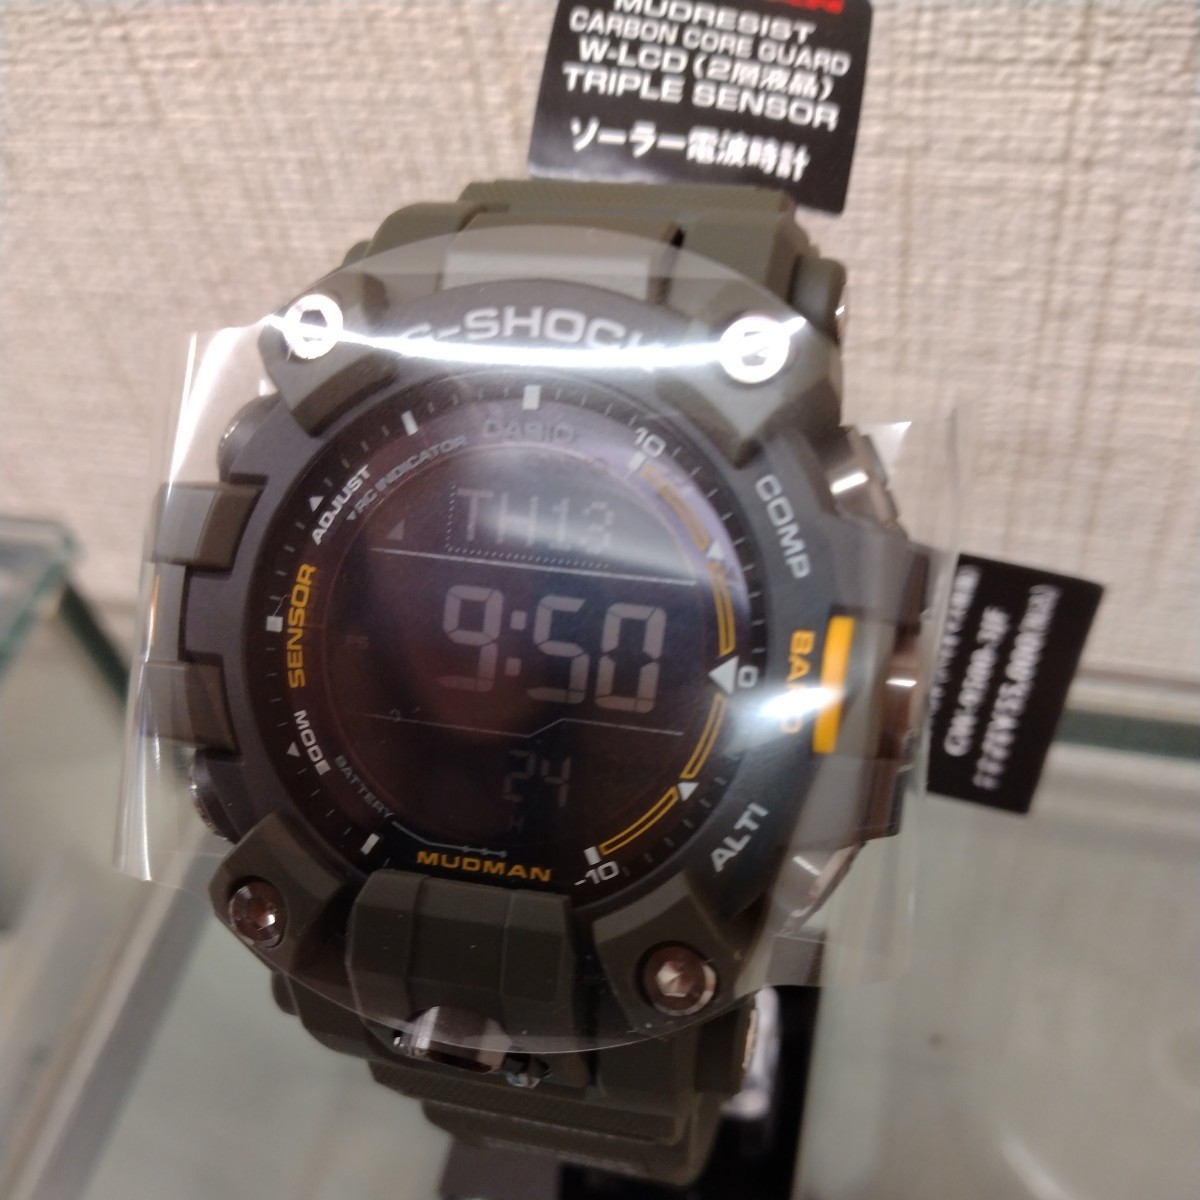 G-SHOCK マッドマン トリプルセンサーモデル電波ソーラー デジタル 反転液晶 メンズ腕時計 GW-9500-3JF 新品 未使用 タグ付き _画像9